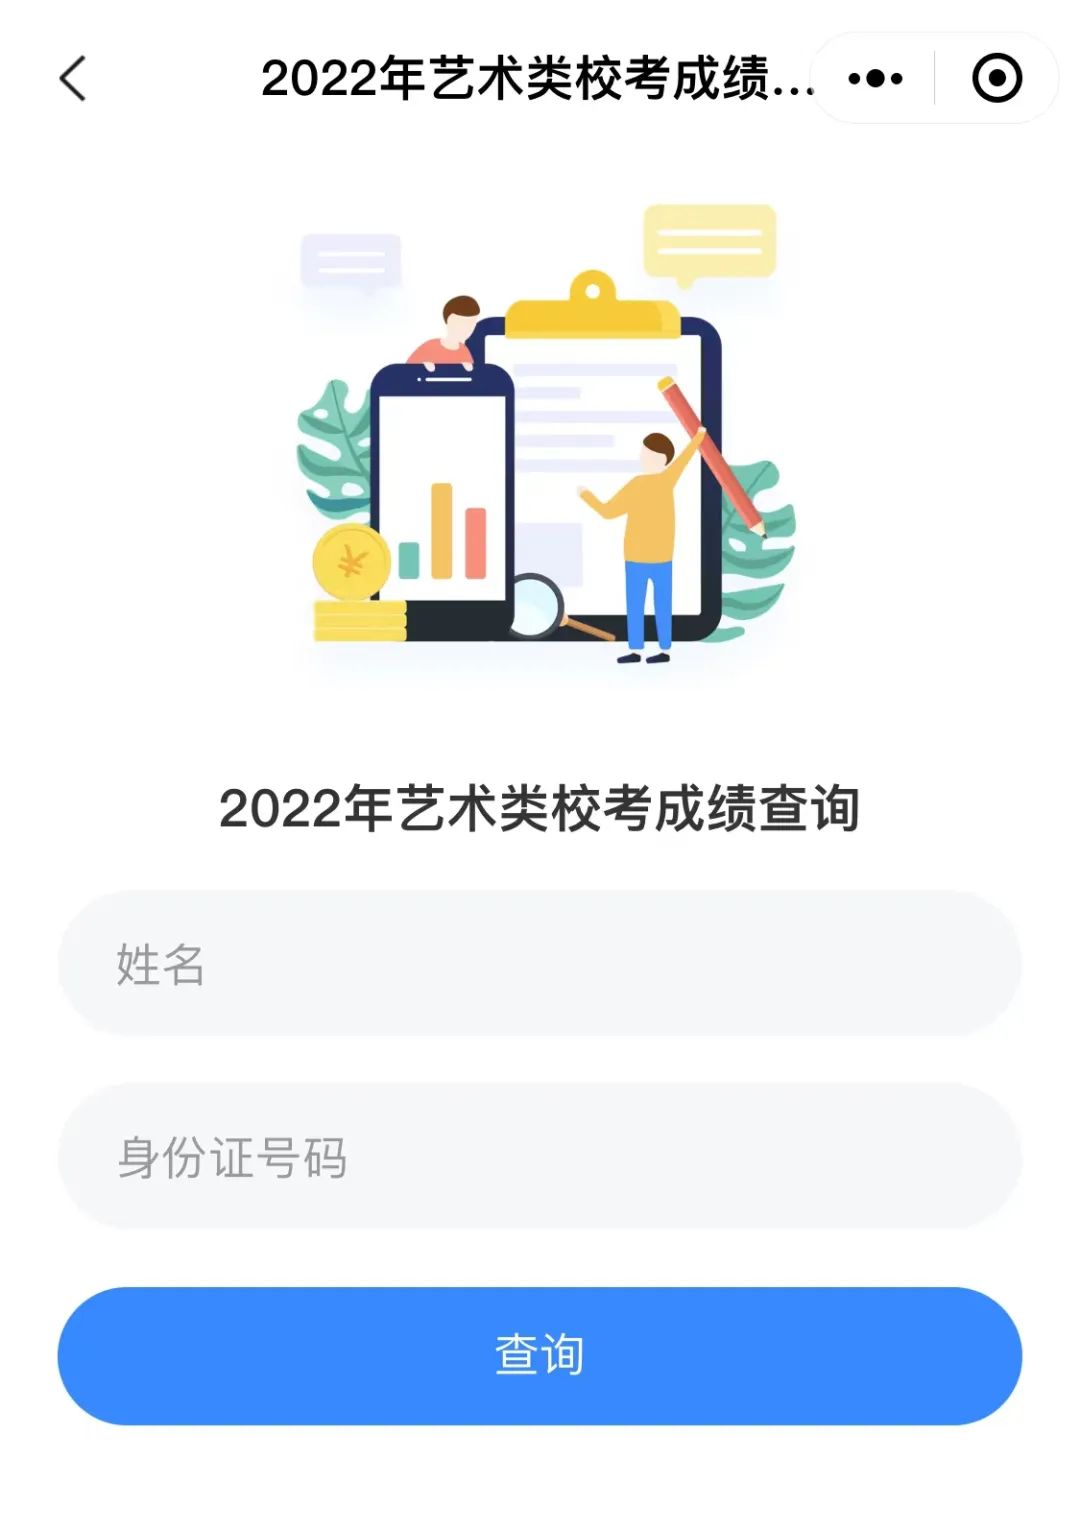 华南农业大学珠江学院2022年校考成绩查询